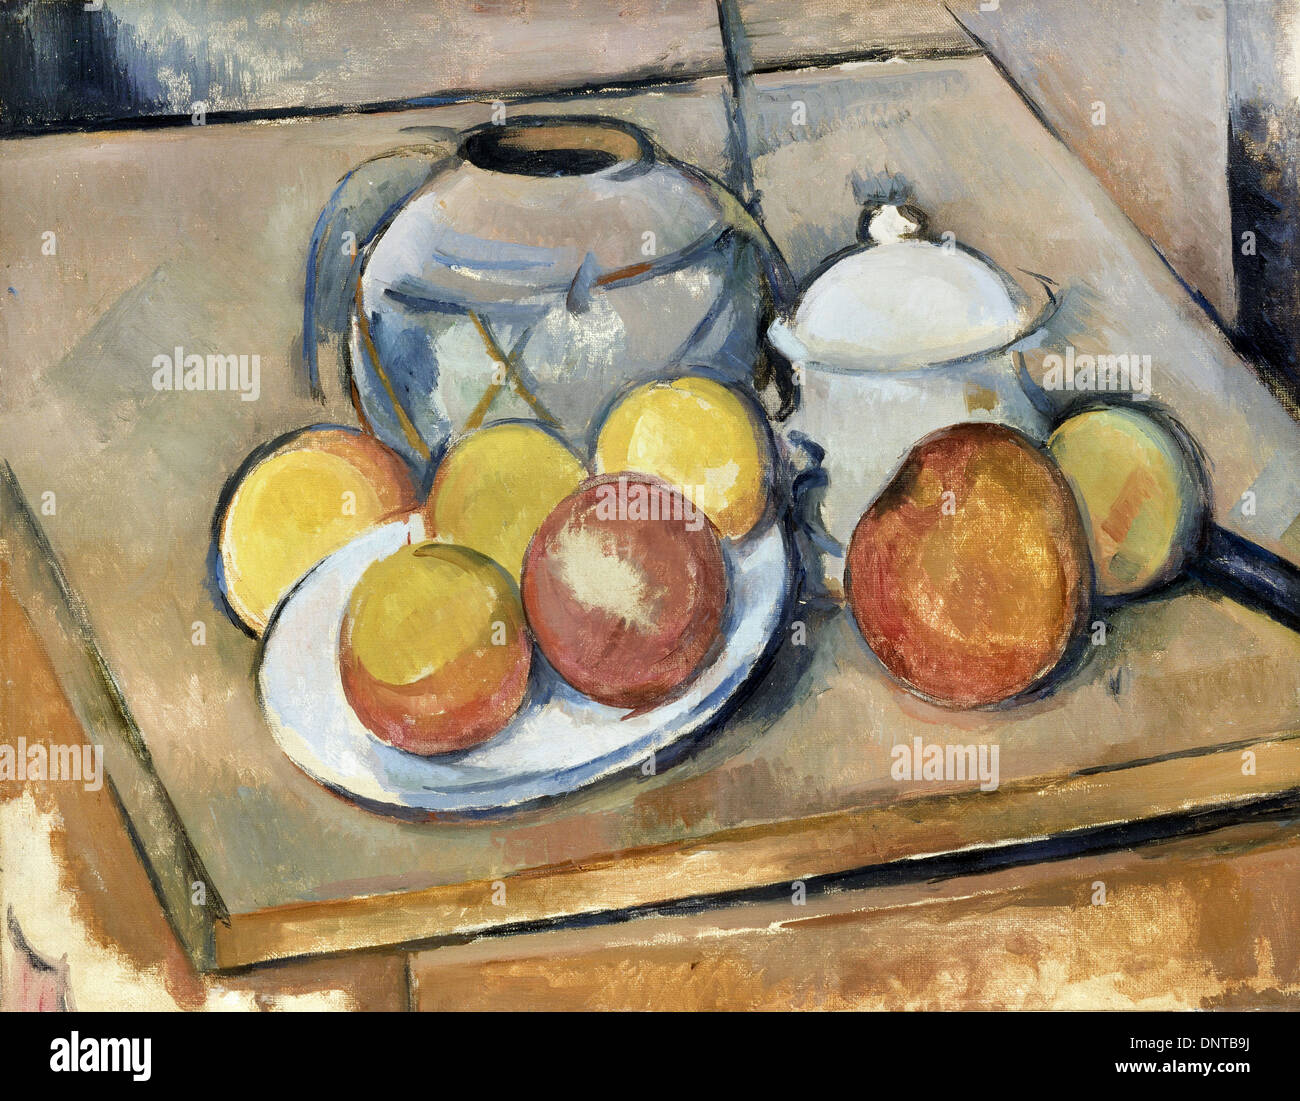 Paul Cezanne, Straw-Trimmed Vase, bol de sucre et les pommes 1890-1893 Huile sur toile. Musée de l'Orangerie, Paris, France. Banque D'Images